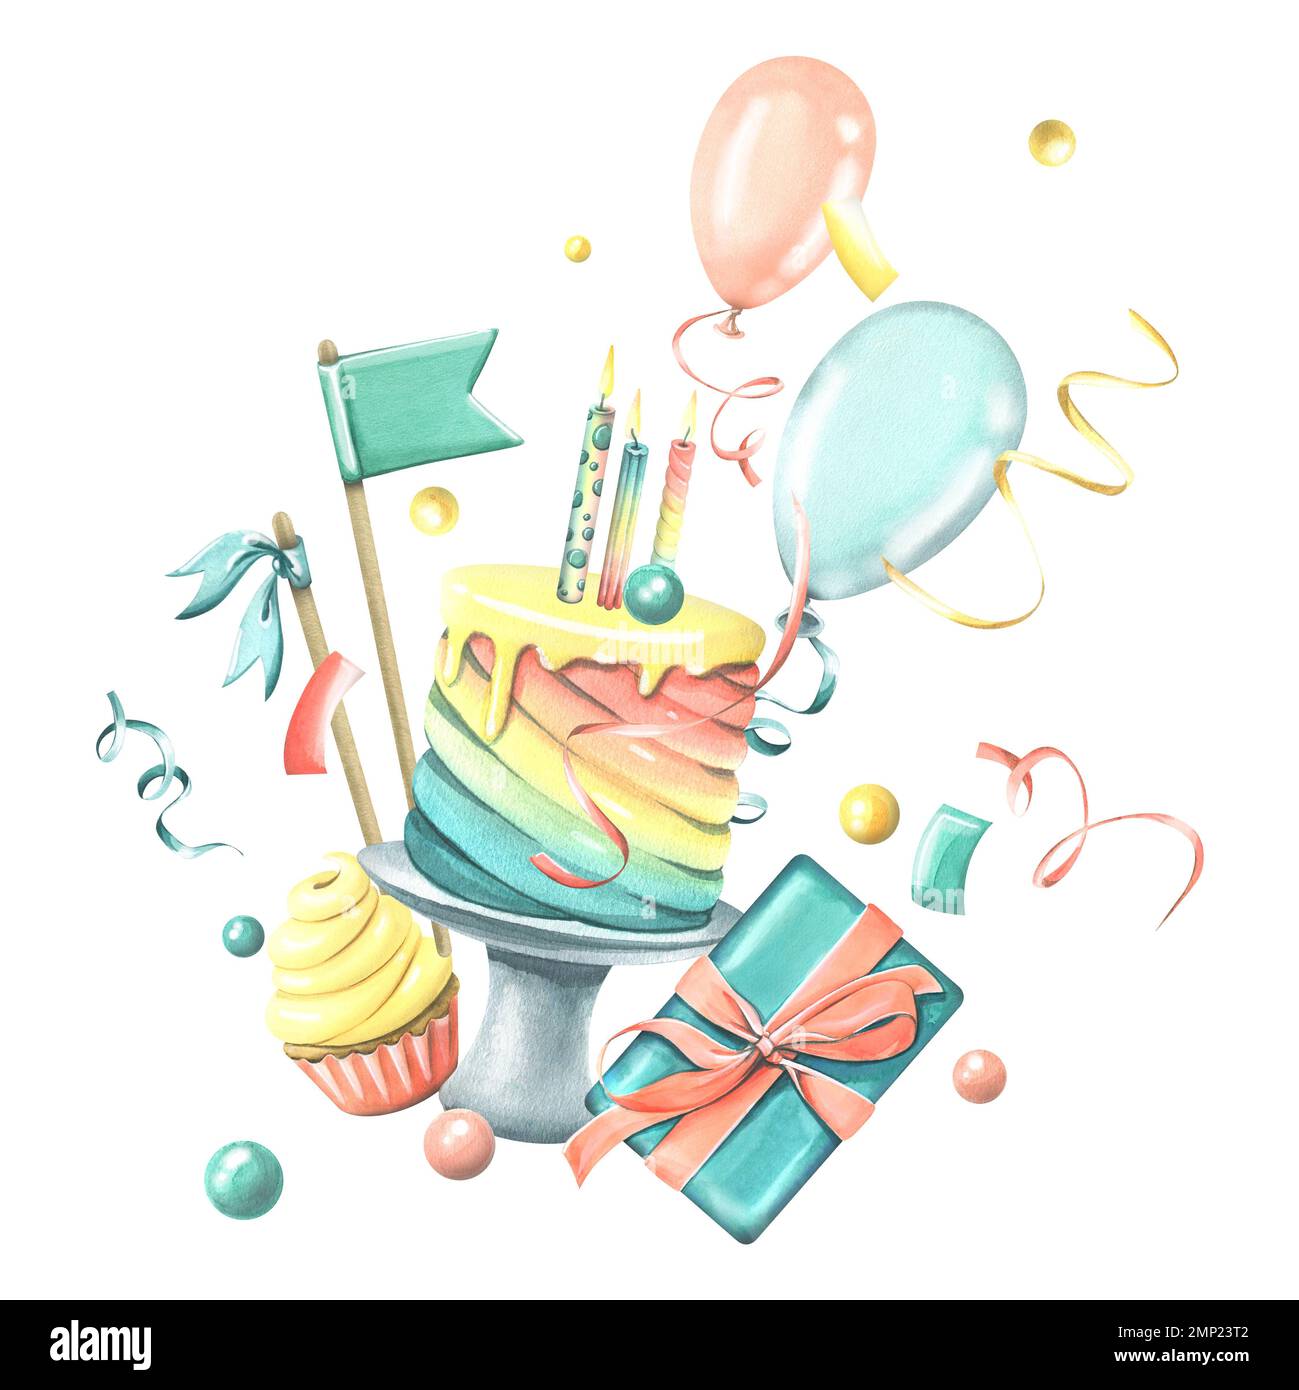 Gâteau arc-en-ciel festif avec bougies, drapeaux, boîte cadeau à petits gâteaux, ballons et confetti. Illustration aquarelle. Une composition du JOYEUX ANNIVERSAIRE Banque D'Images